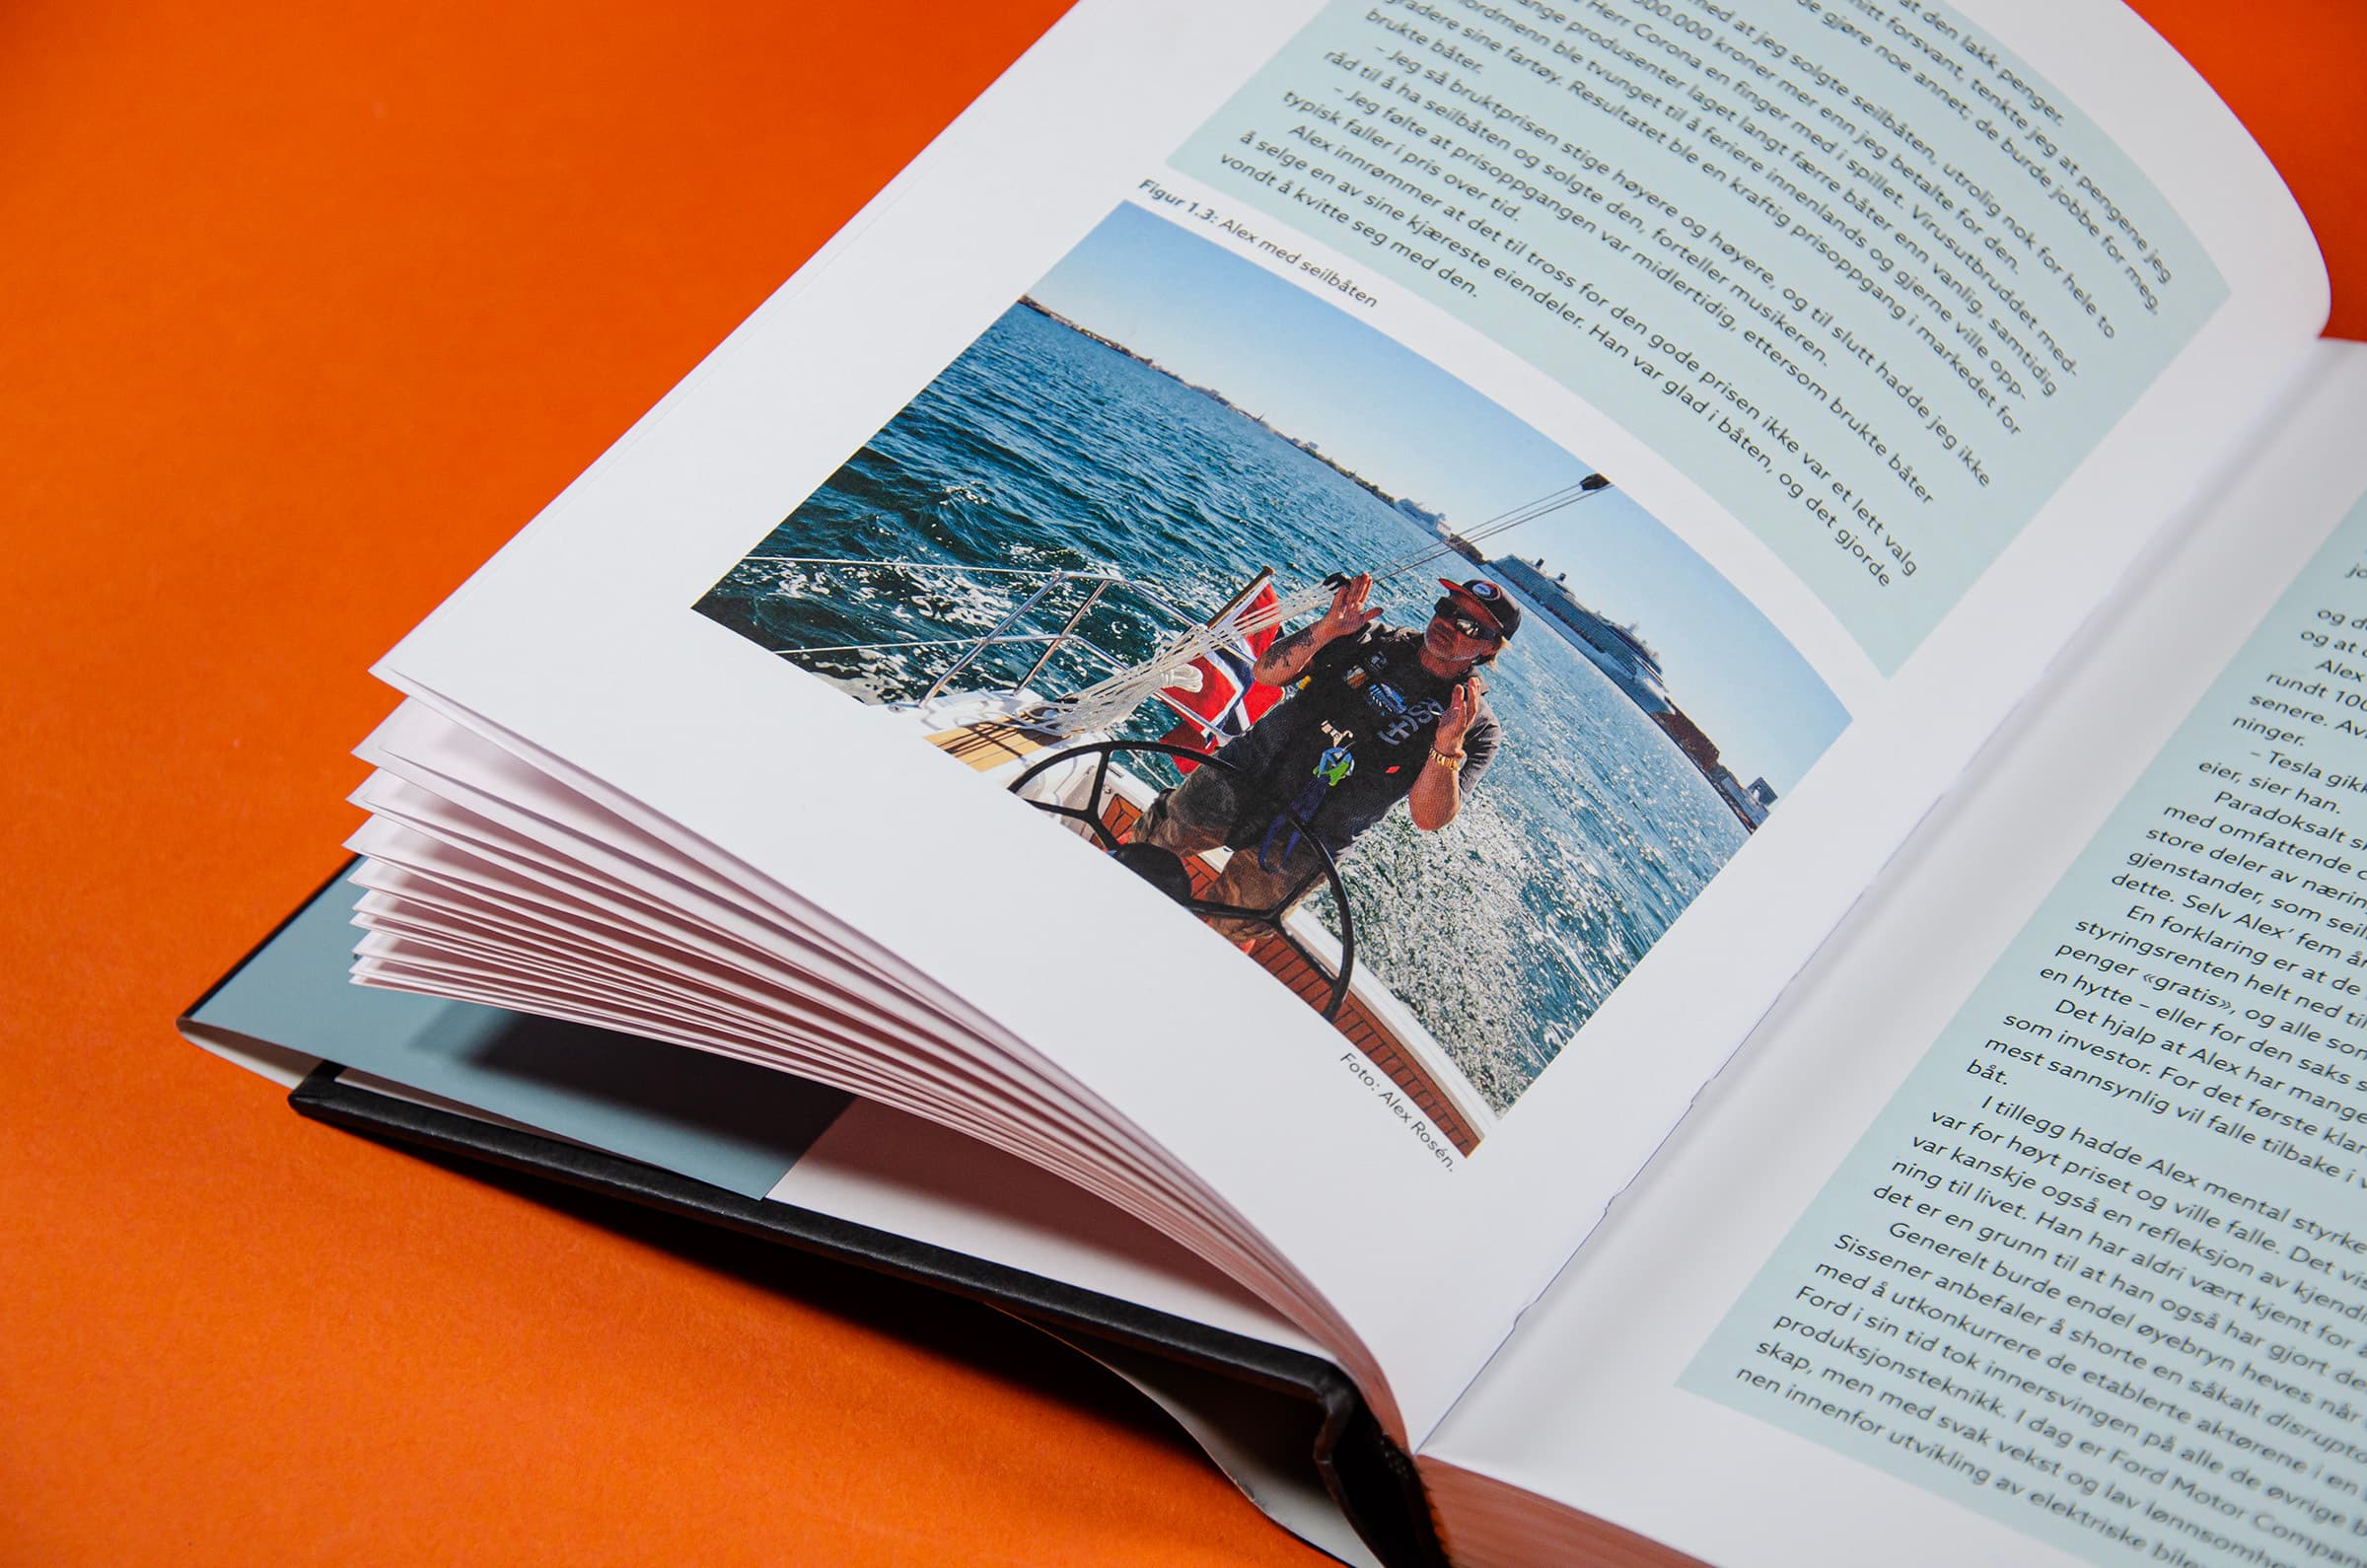 Bildet viser et utsnitt av en bok. Det er blå tekstbokser på siden. Nederst på venstre side er det et bilde av Alex Rosén i en seilbåt.